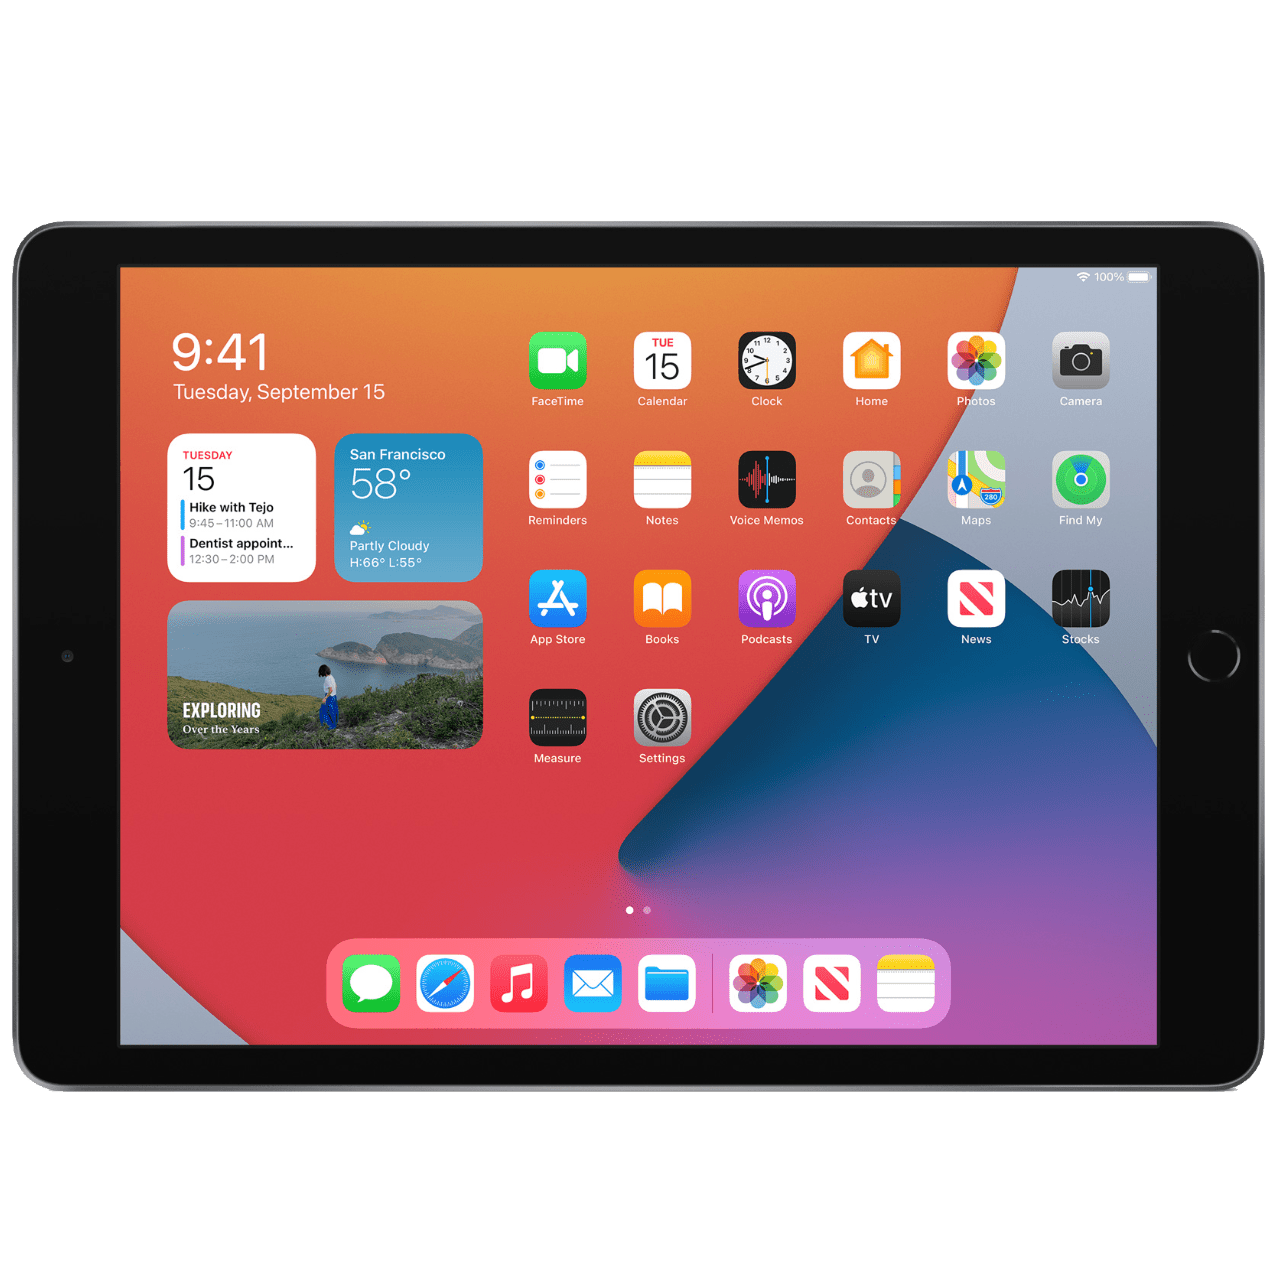 Lenovo Yoga Tablet 2 (8) : meilleur prix, fiche technique et actualité –  Tablettes tactiles – Frandroid